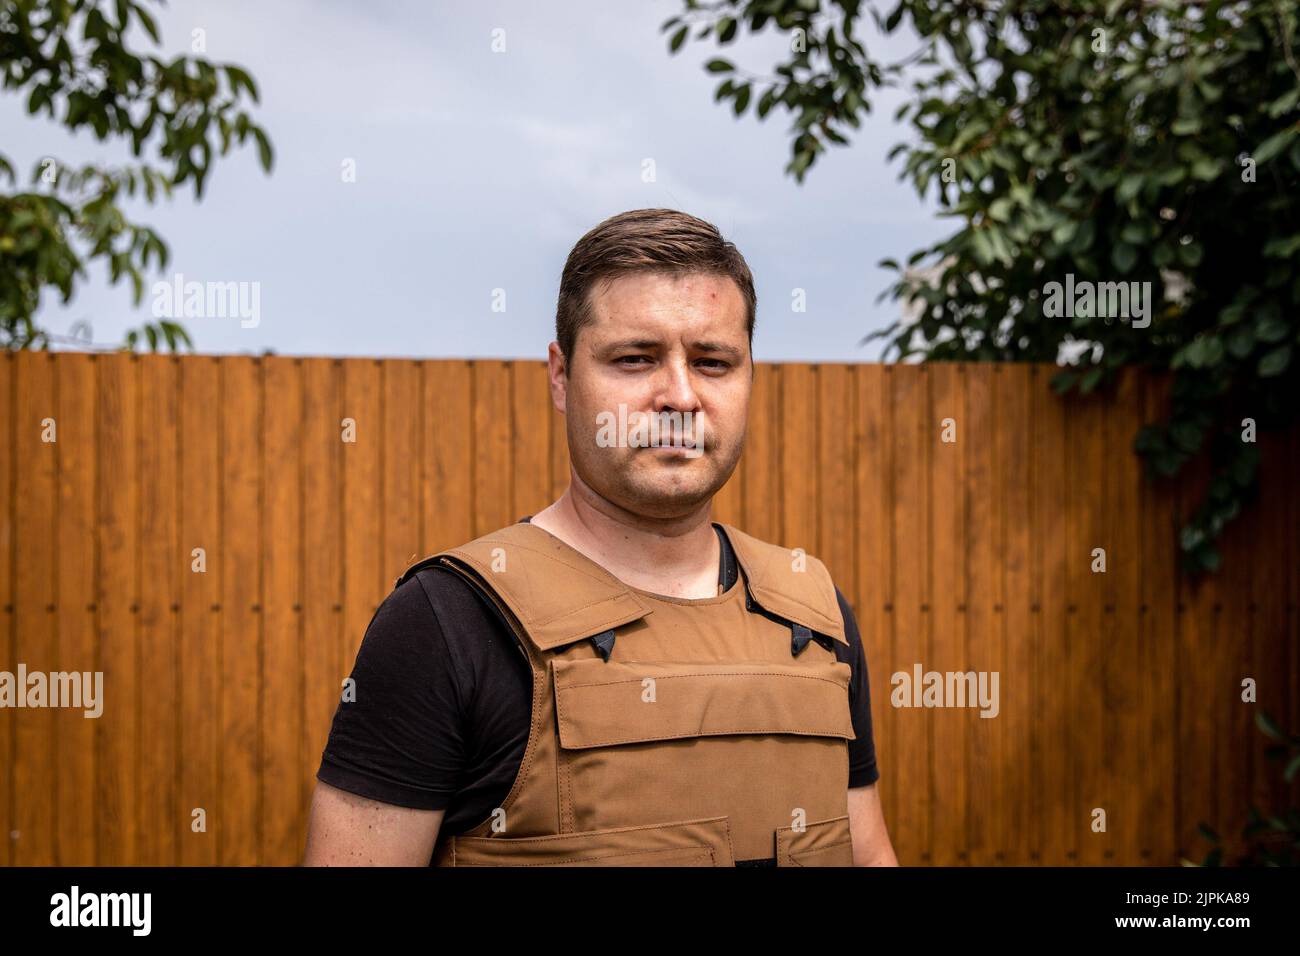 Capo della comunità Mykolaiv Oblast Pylypenko Oleg Valeriyovych (36) posa per una foto a Mykolaiv Oblast, Ucraina, è stato rilasciato di recente come programma di scambio di prigionieri con i russi, è stato tenuto prigioniero per 3 mesi e ha affermato di essere sotto tortura durante il periodo. Mentre i funzionari ucraini hanno rivendicato la parzialità per recuperare il loro territorio, e lanciando una contro-offensiva nell'asse sud del paese, compreso Mykolaiv Oblast, l'area è stata sottoposta a pesanti combattimenti, e i villaggi liberati che circondano Mykolaiv città sono stati sotto pesanti conchiglie. (Foto di Alex Chan Tsz Y Foto Stock